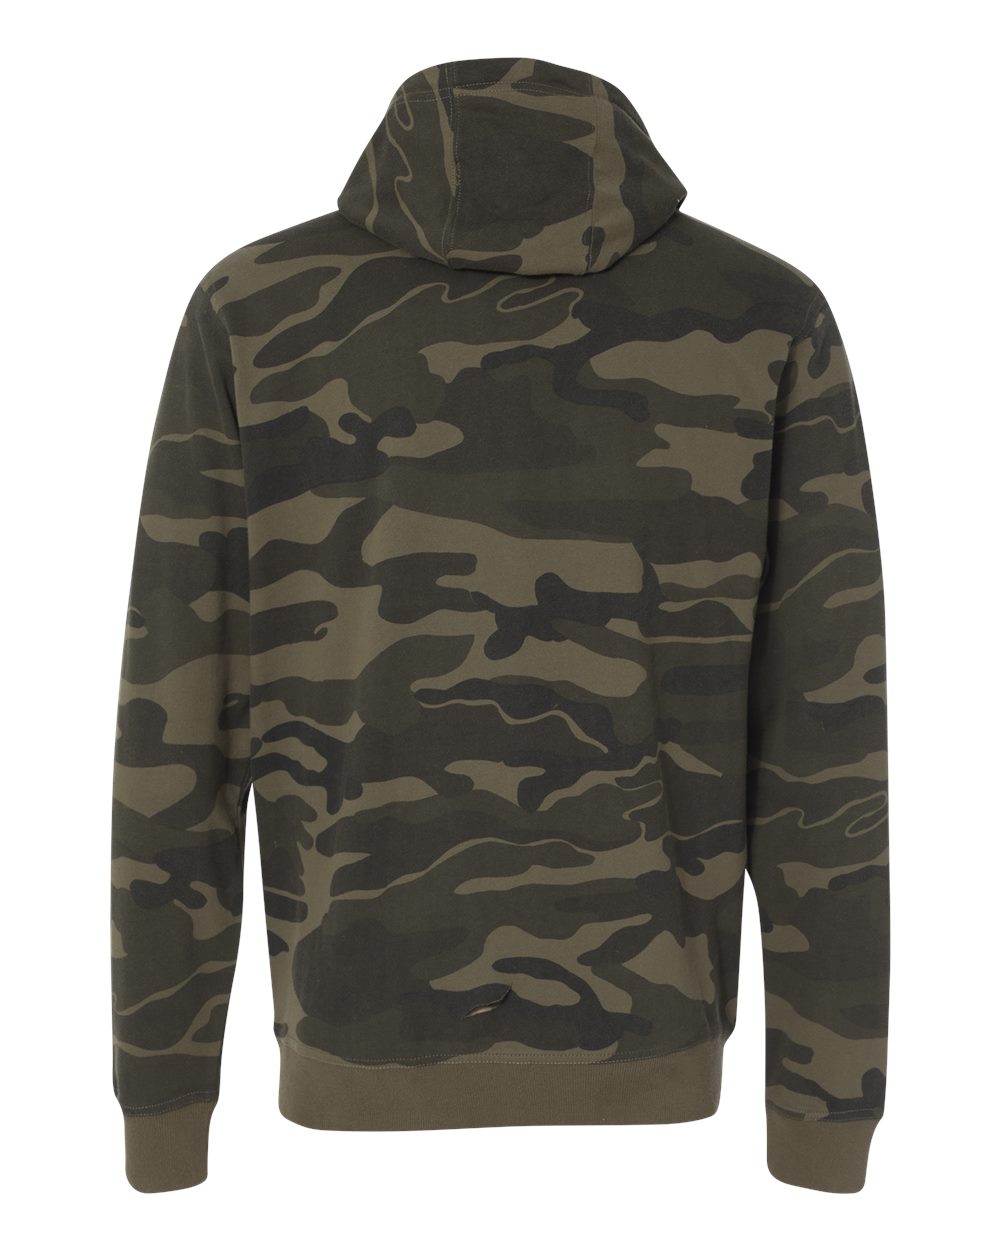 Burnside Mens Camo Full-Zip Hooded Sweatshirt 8615 up to 3XL | eBay